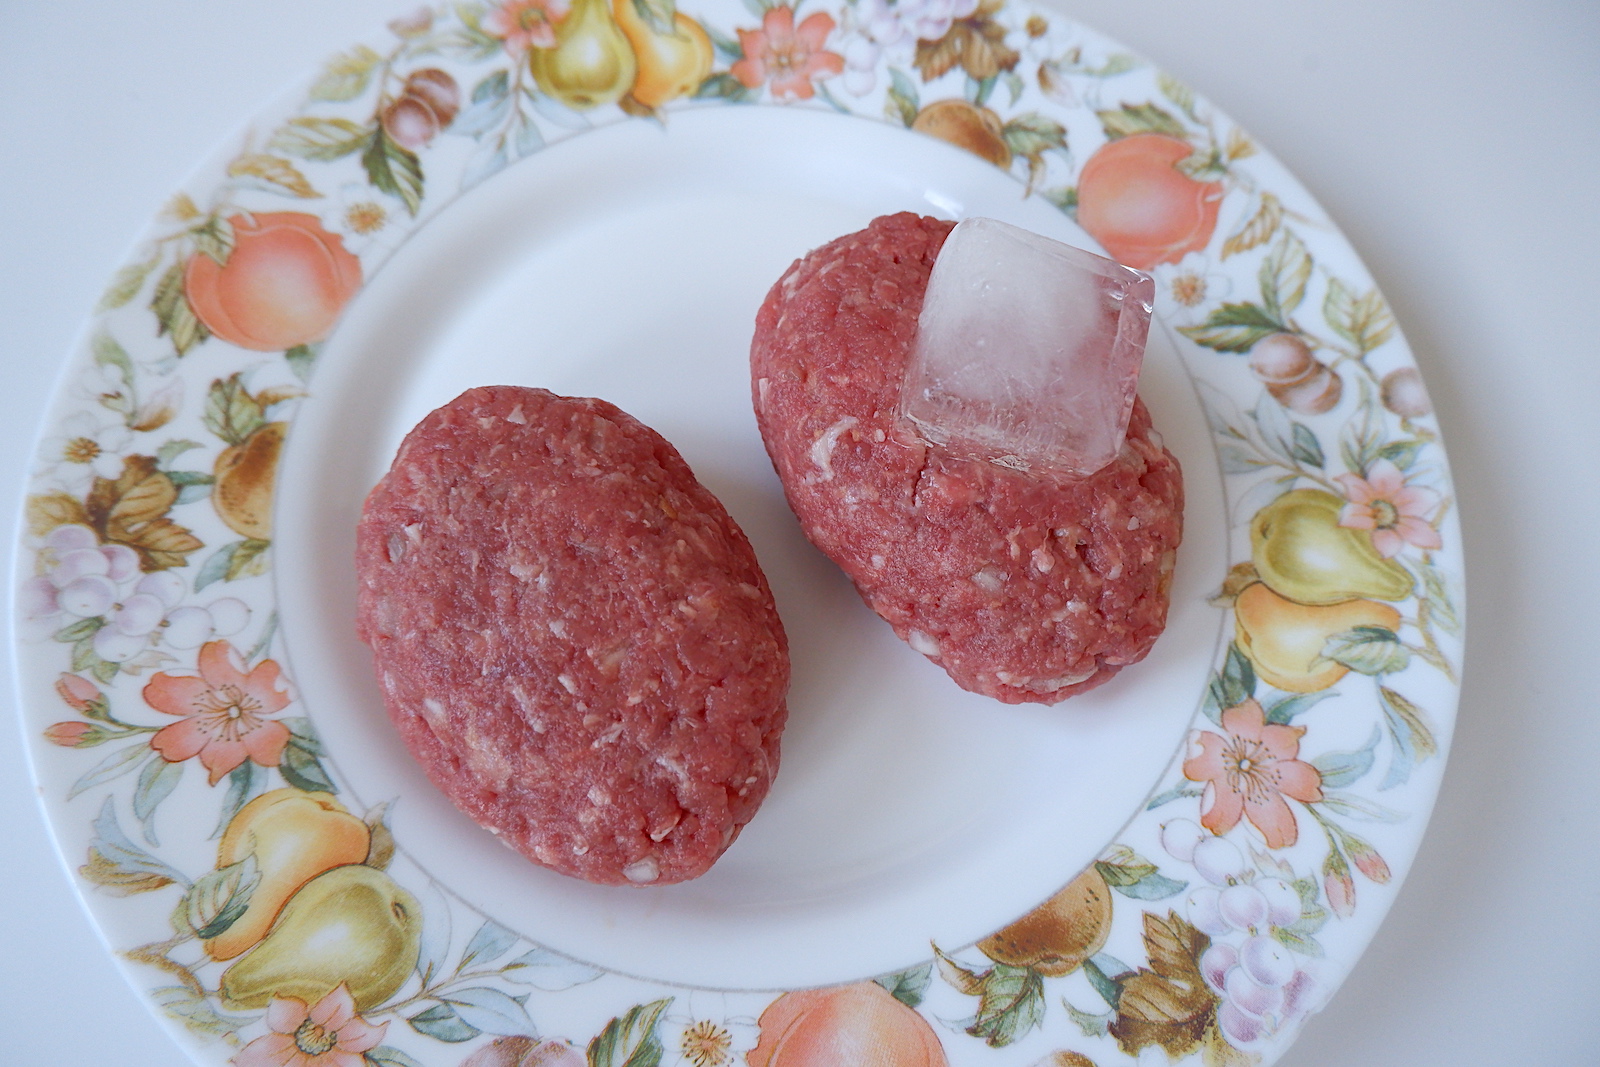 検証 ハンバーグのタネに氷を入れると肉汁アップは本当なのか2パターンで挑戦 確かに肉汁がアップしたよ Pouch ポーチ